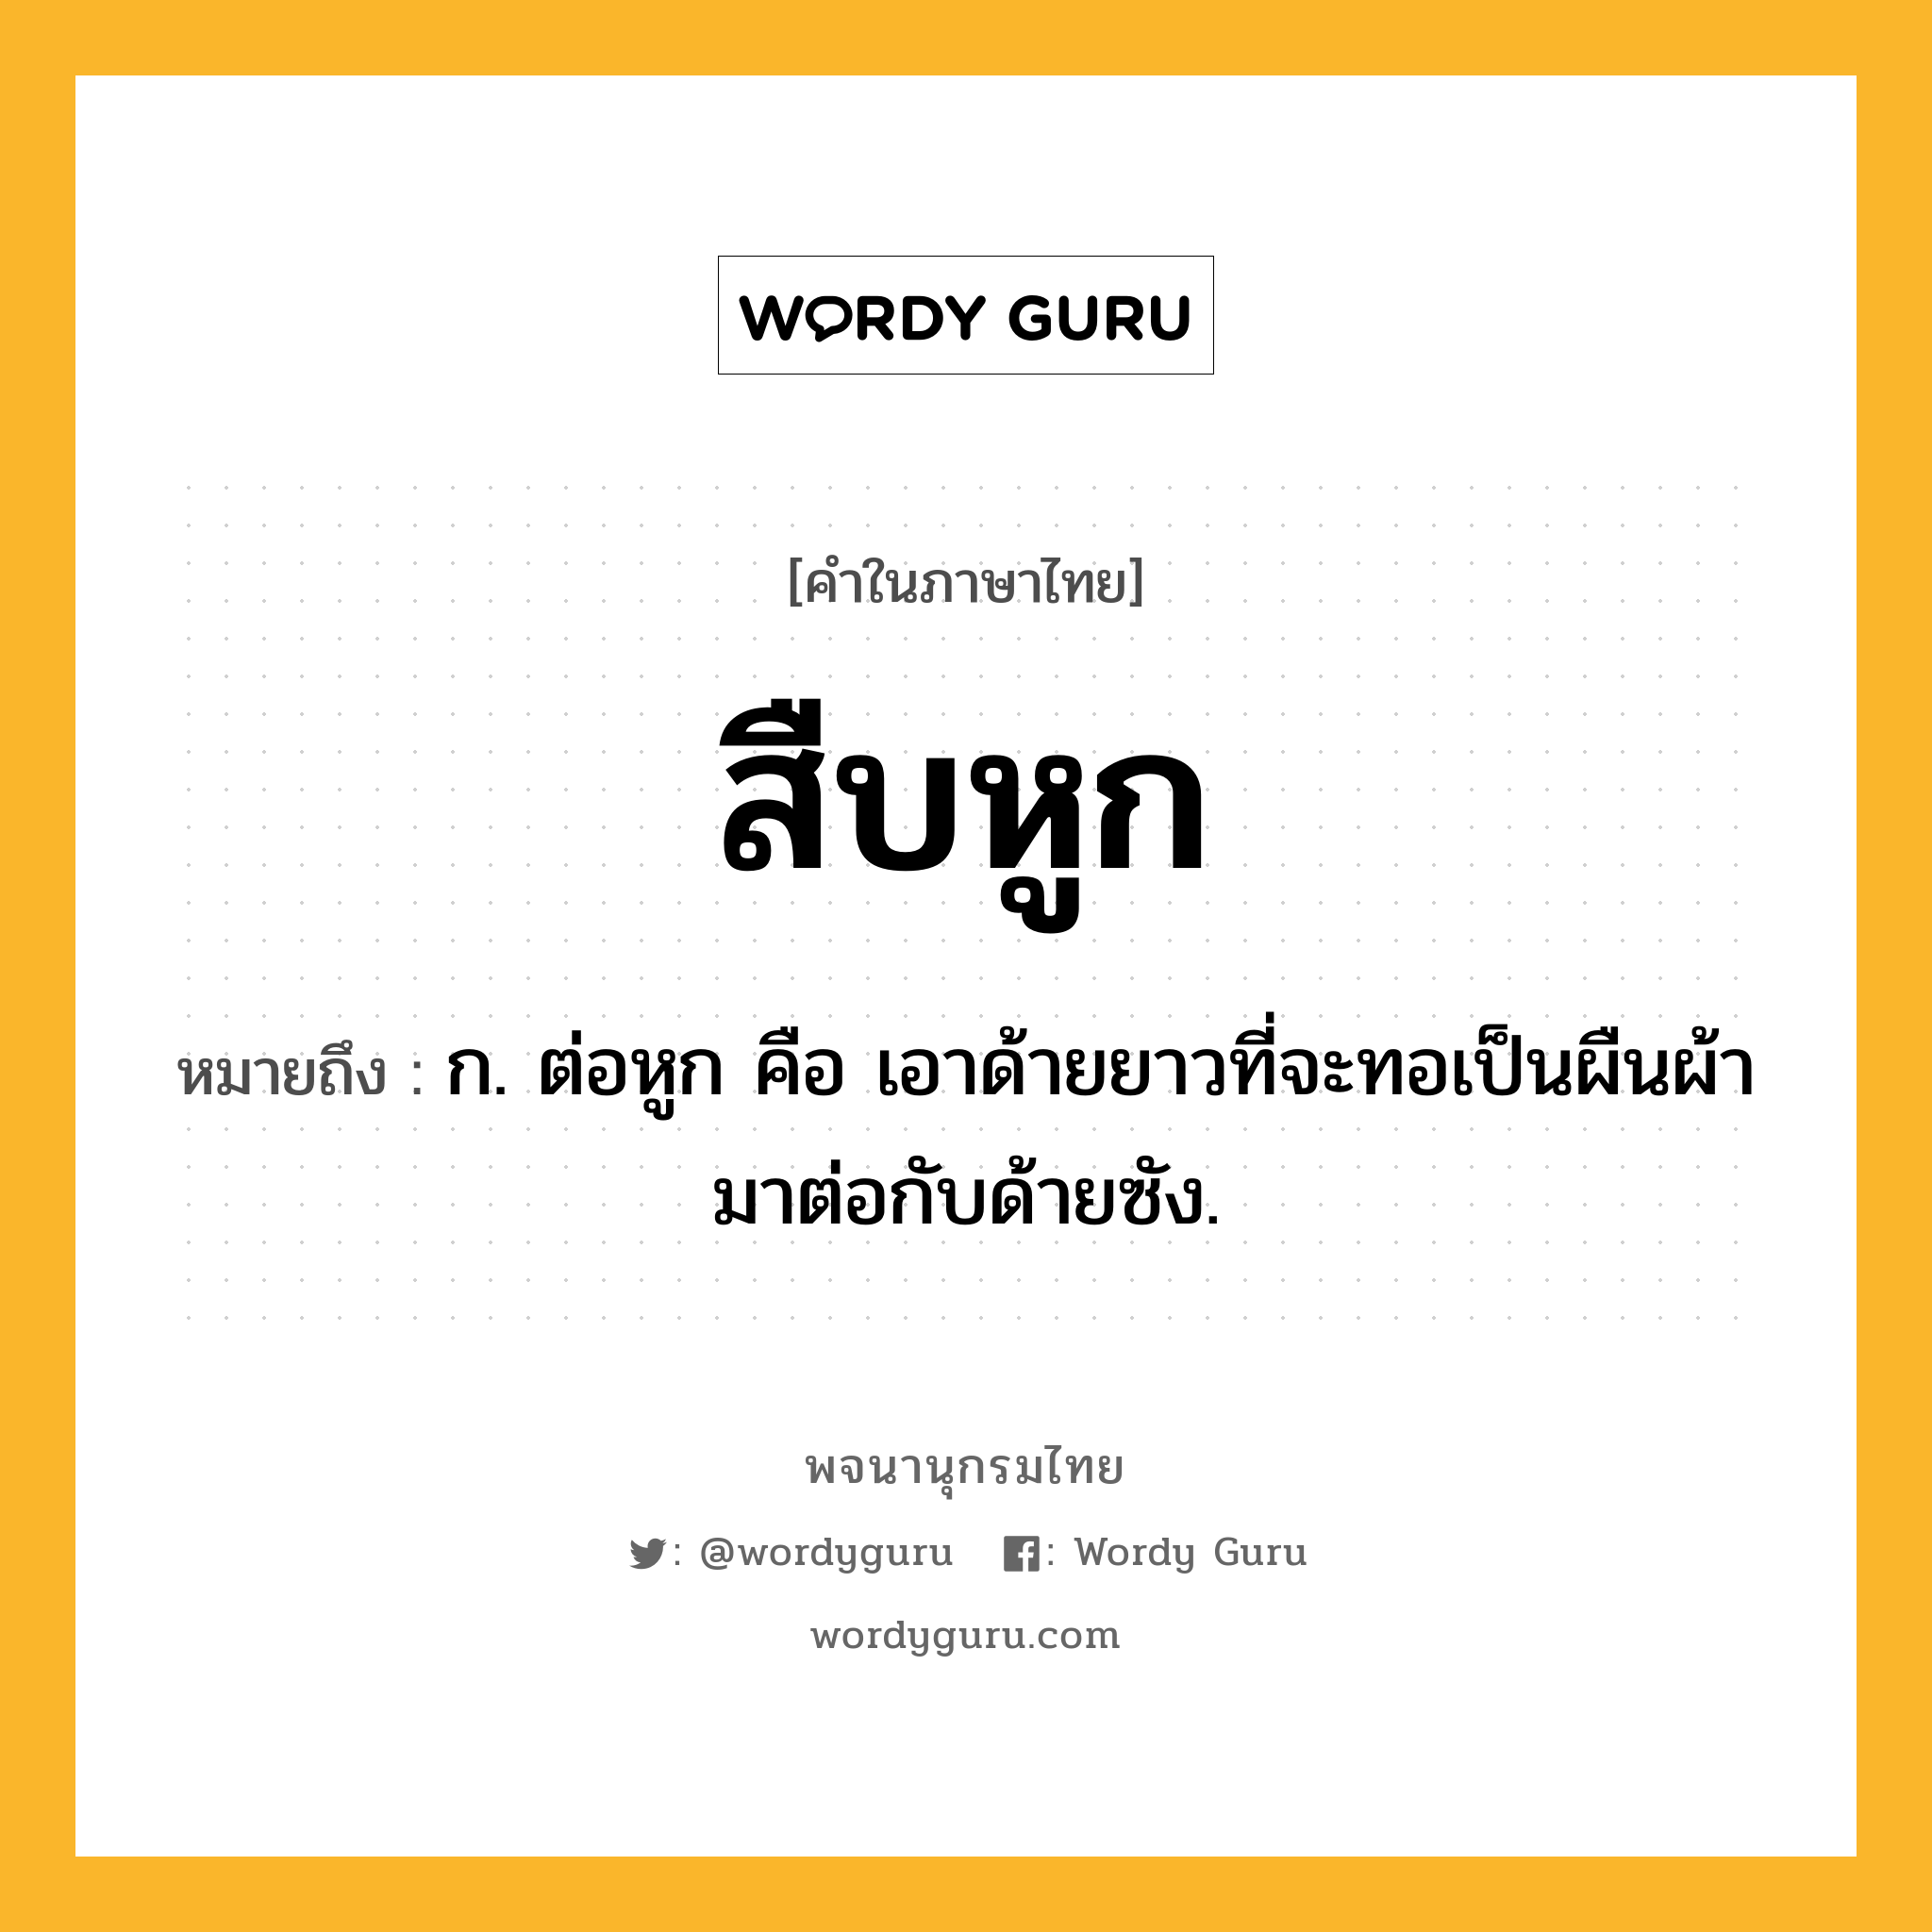 สืบหูก ความหมาย หมายถึงอะไร?, คำในภาษาไทย สืบหูก หมายถึง ก. ต่อหูก คือ เอาด้ายยาวที่จะทอเป็นผืนผ้ามาต่อกับด้ายซัง.